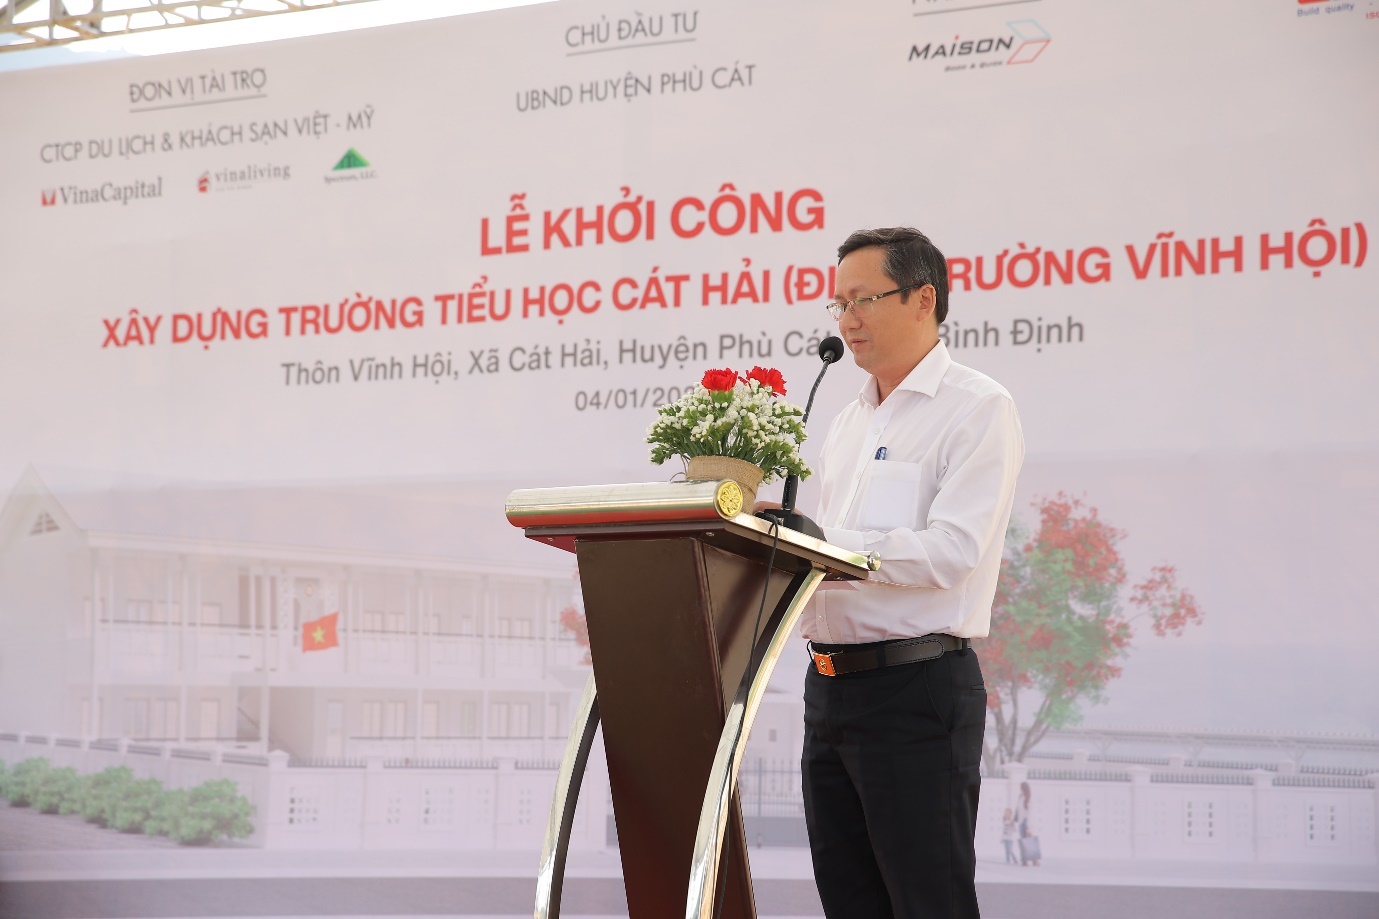 Ông Đỗ Xuân Thắng – Phó Chủ tịch UBND Huyện Phù Cát phát biểu tại Lễ khởi công